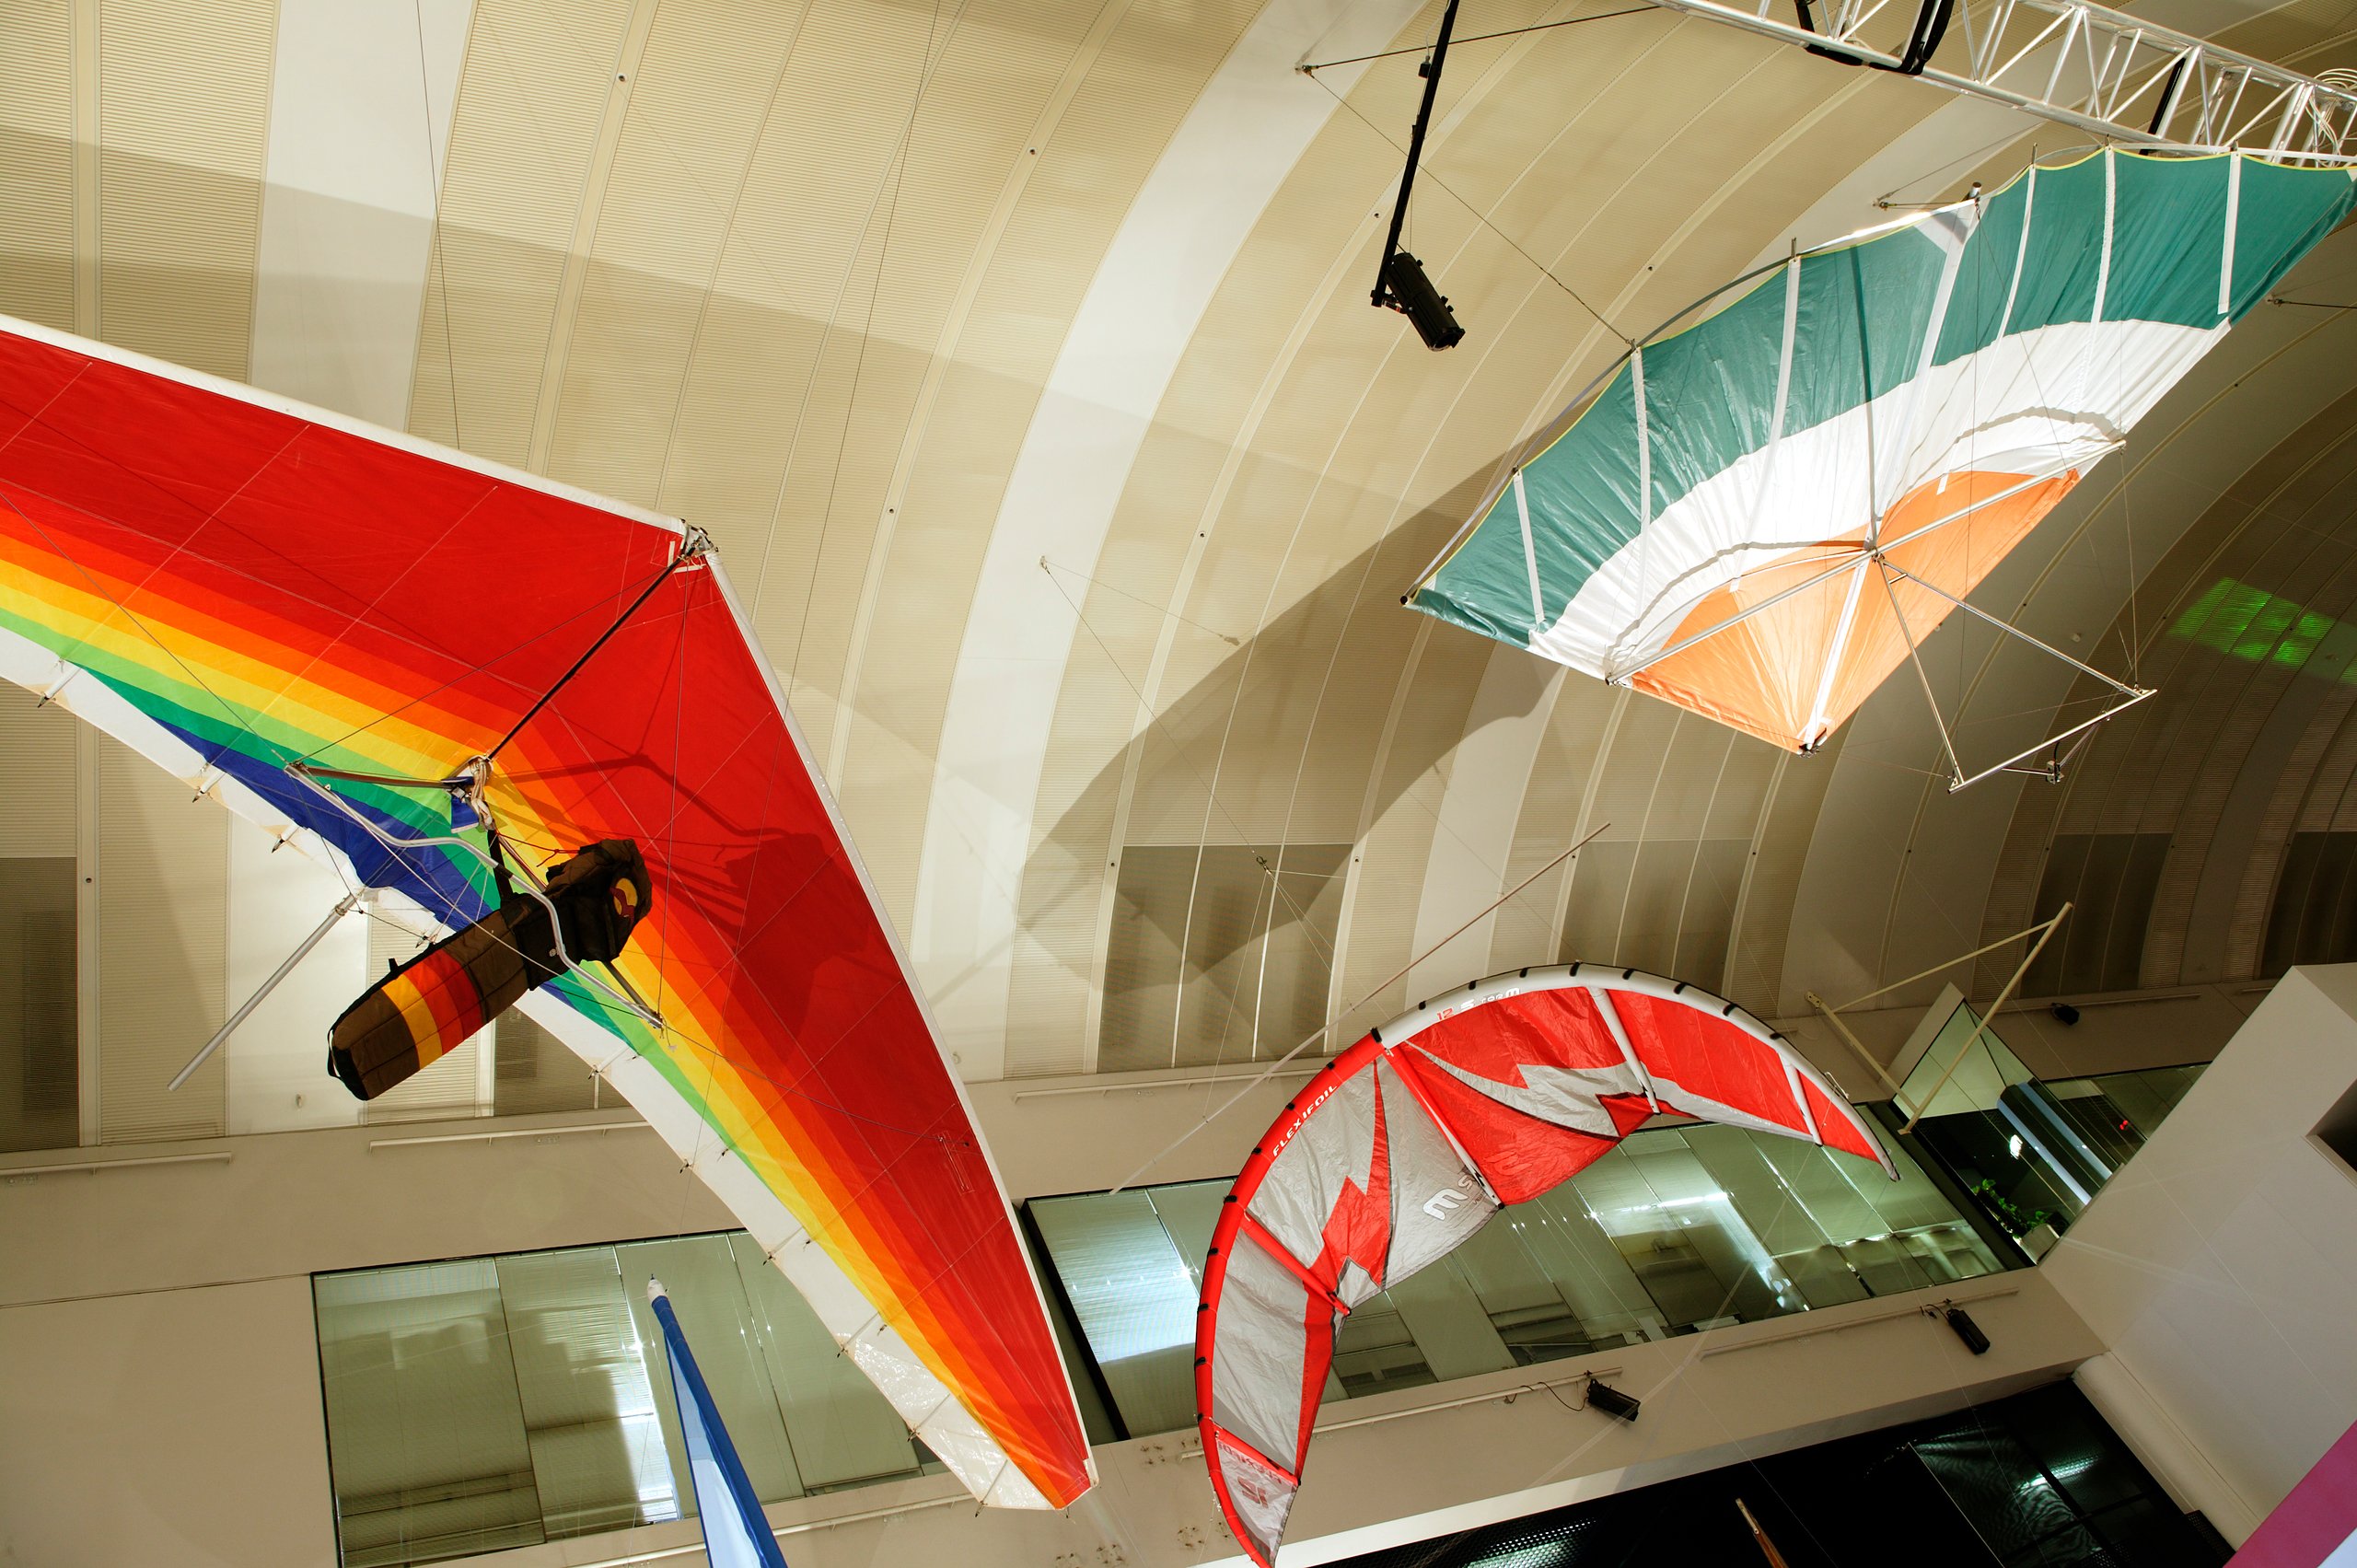 'Storm II' surfing kite by Flexifoil International